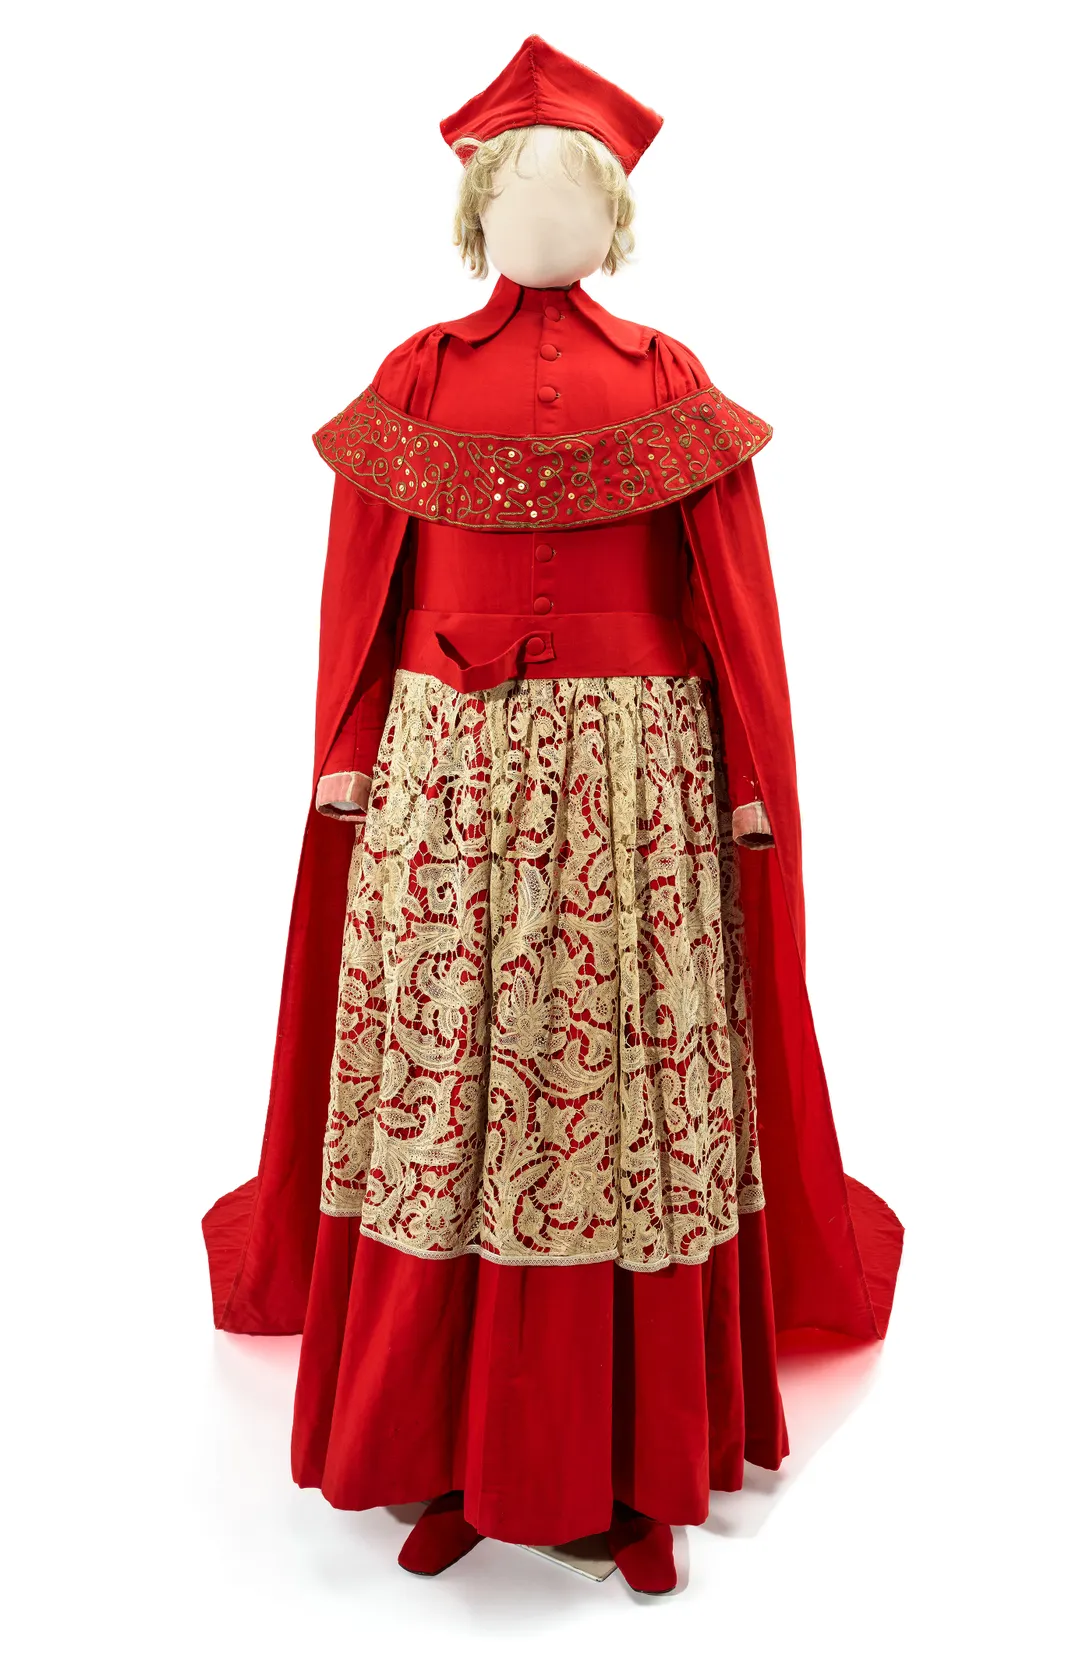 Cardinal Wolsey costume